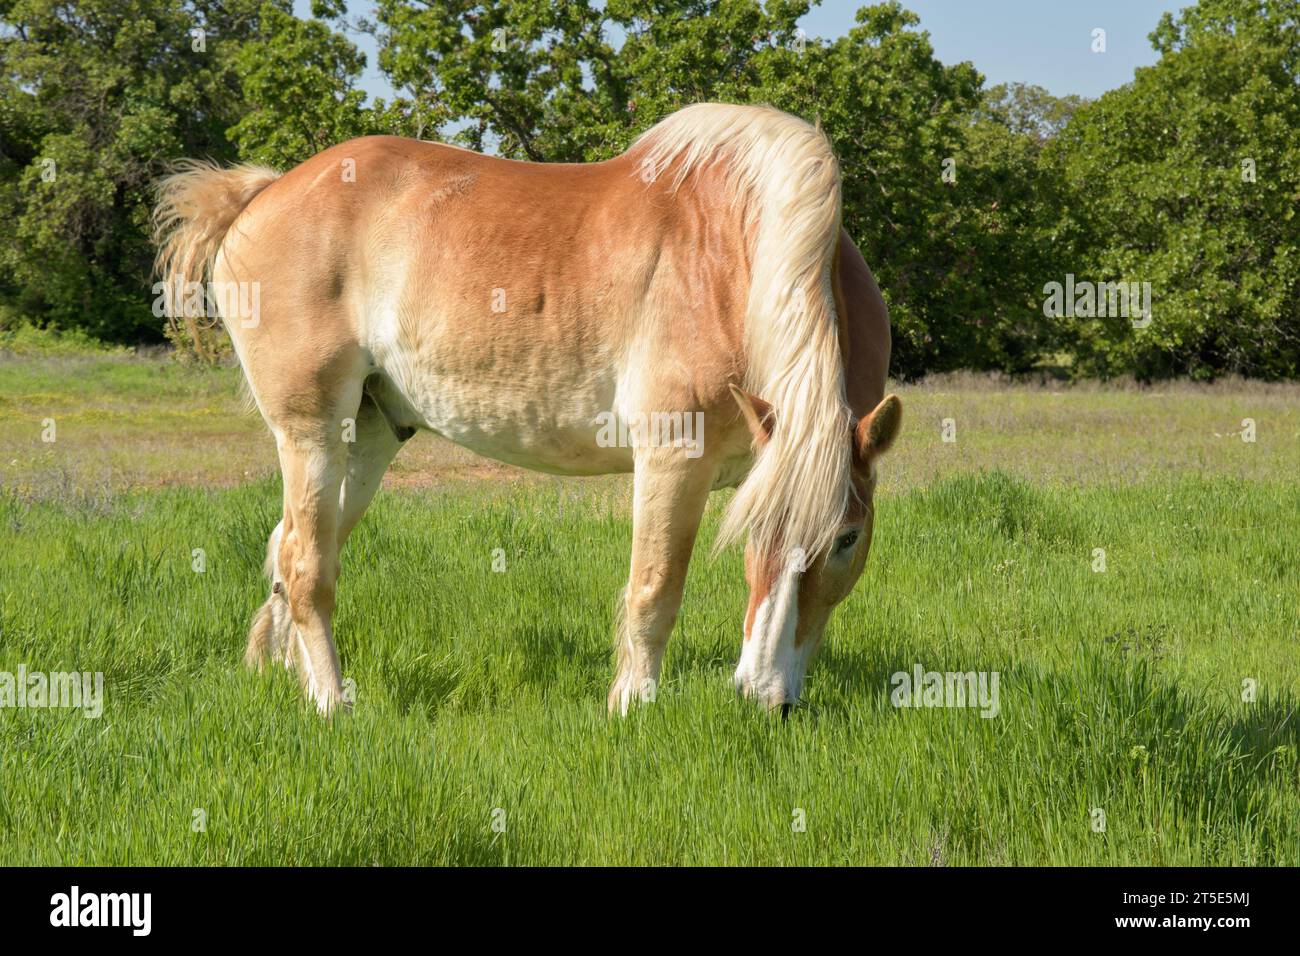 Cheval de trait belge pâturant dans l'herbe verte luxuriante dans un pâturage d'été ensoleillé Banque D'Images